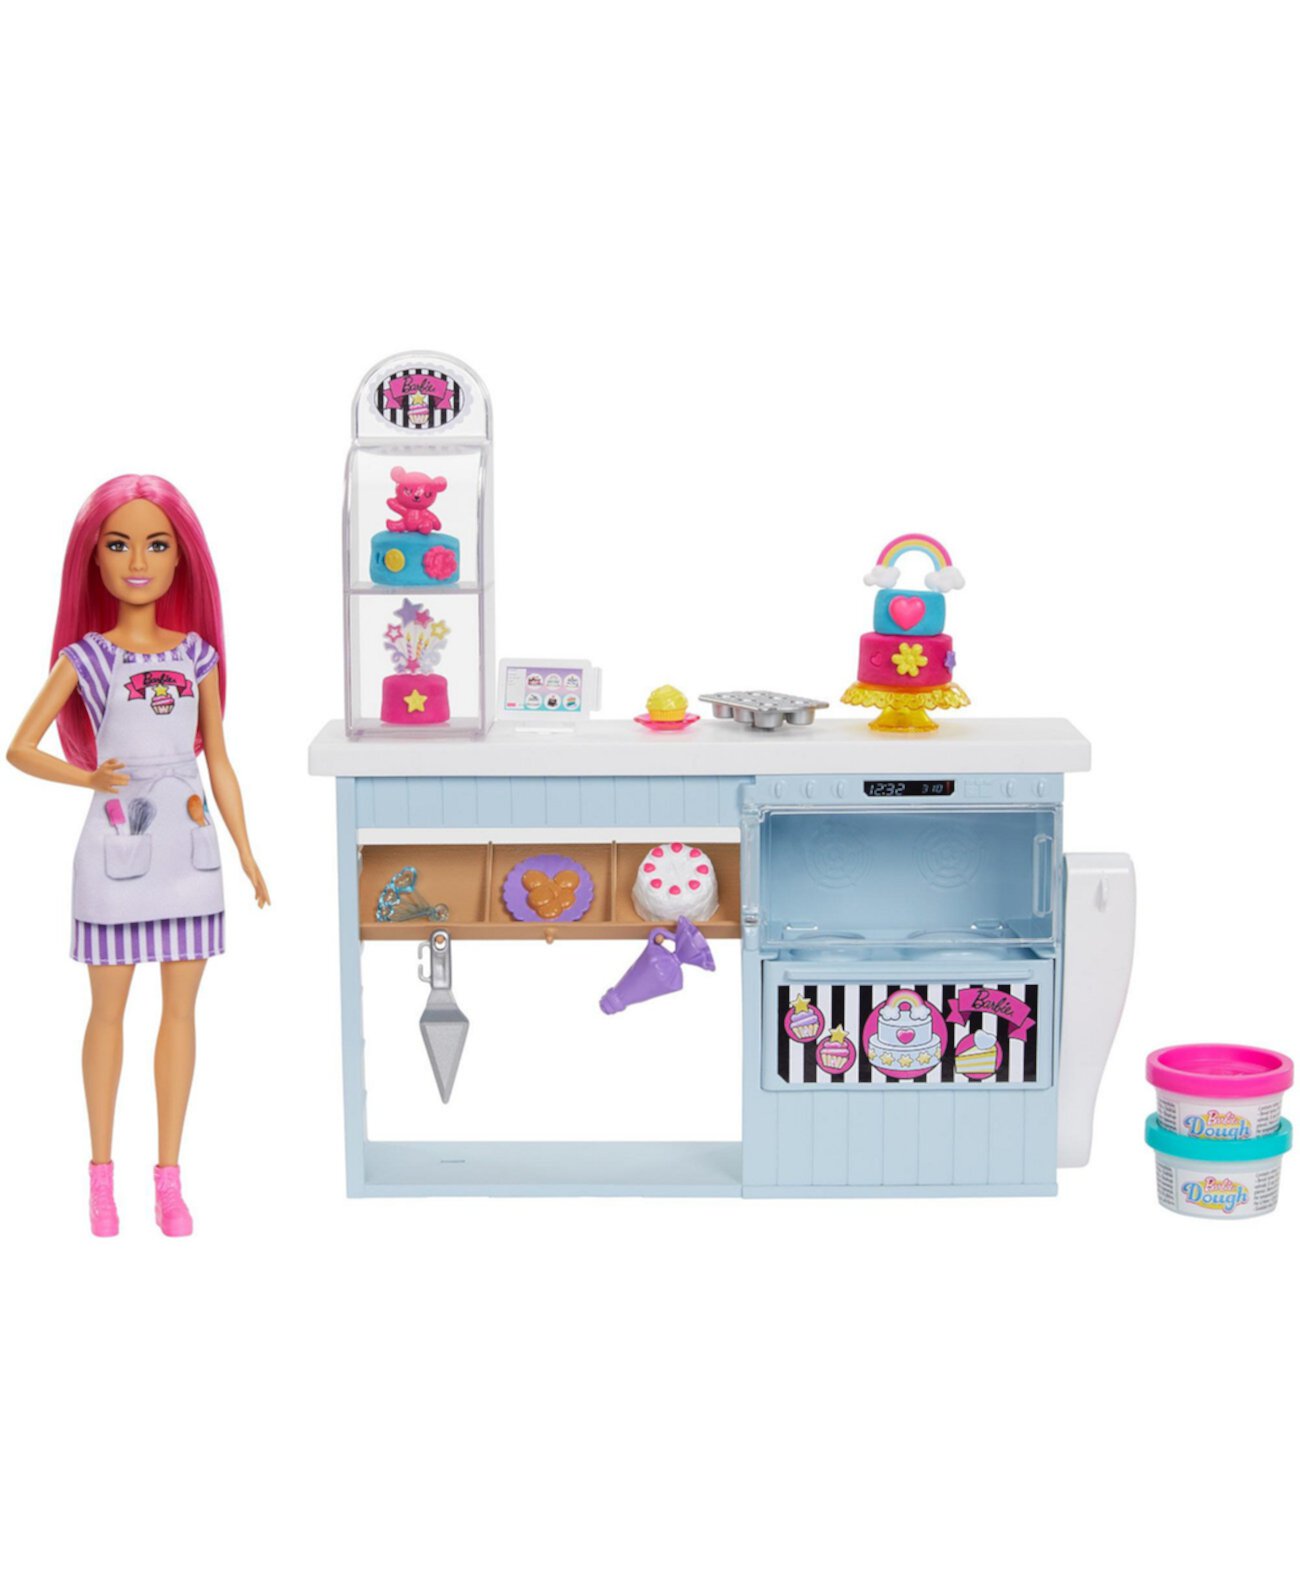 Игровой набор для кукольной пекарни с розоволосой миниатюрной куклой, пекарской станцией Barbie